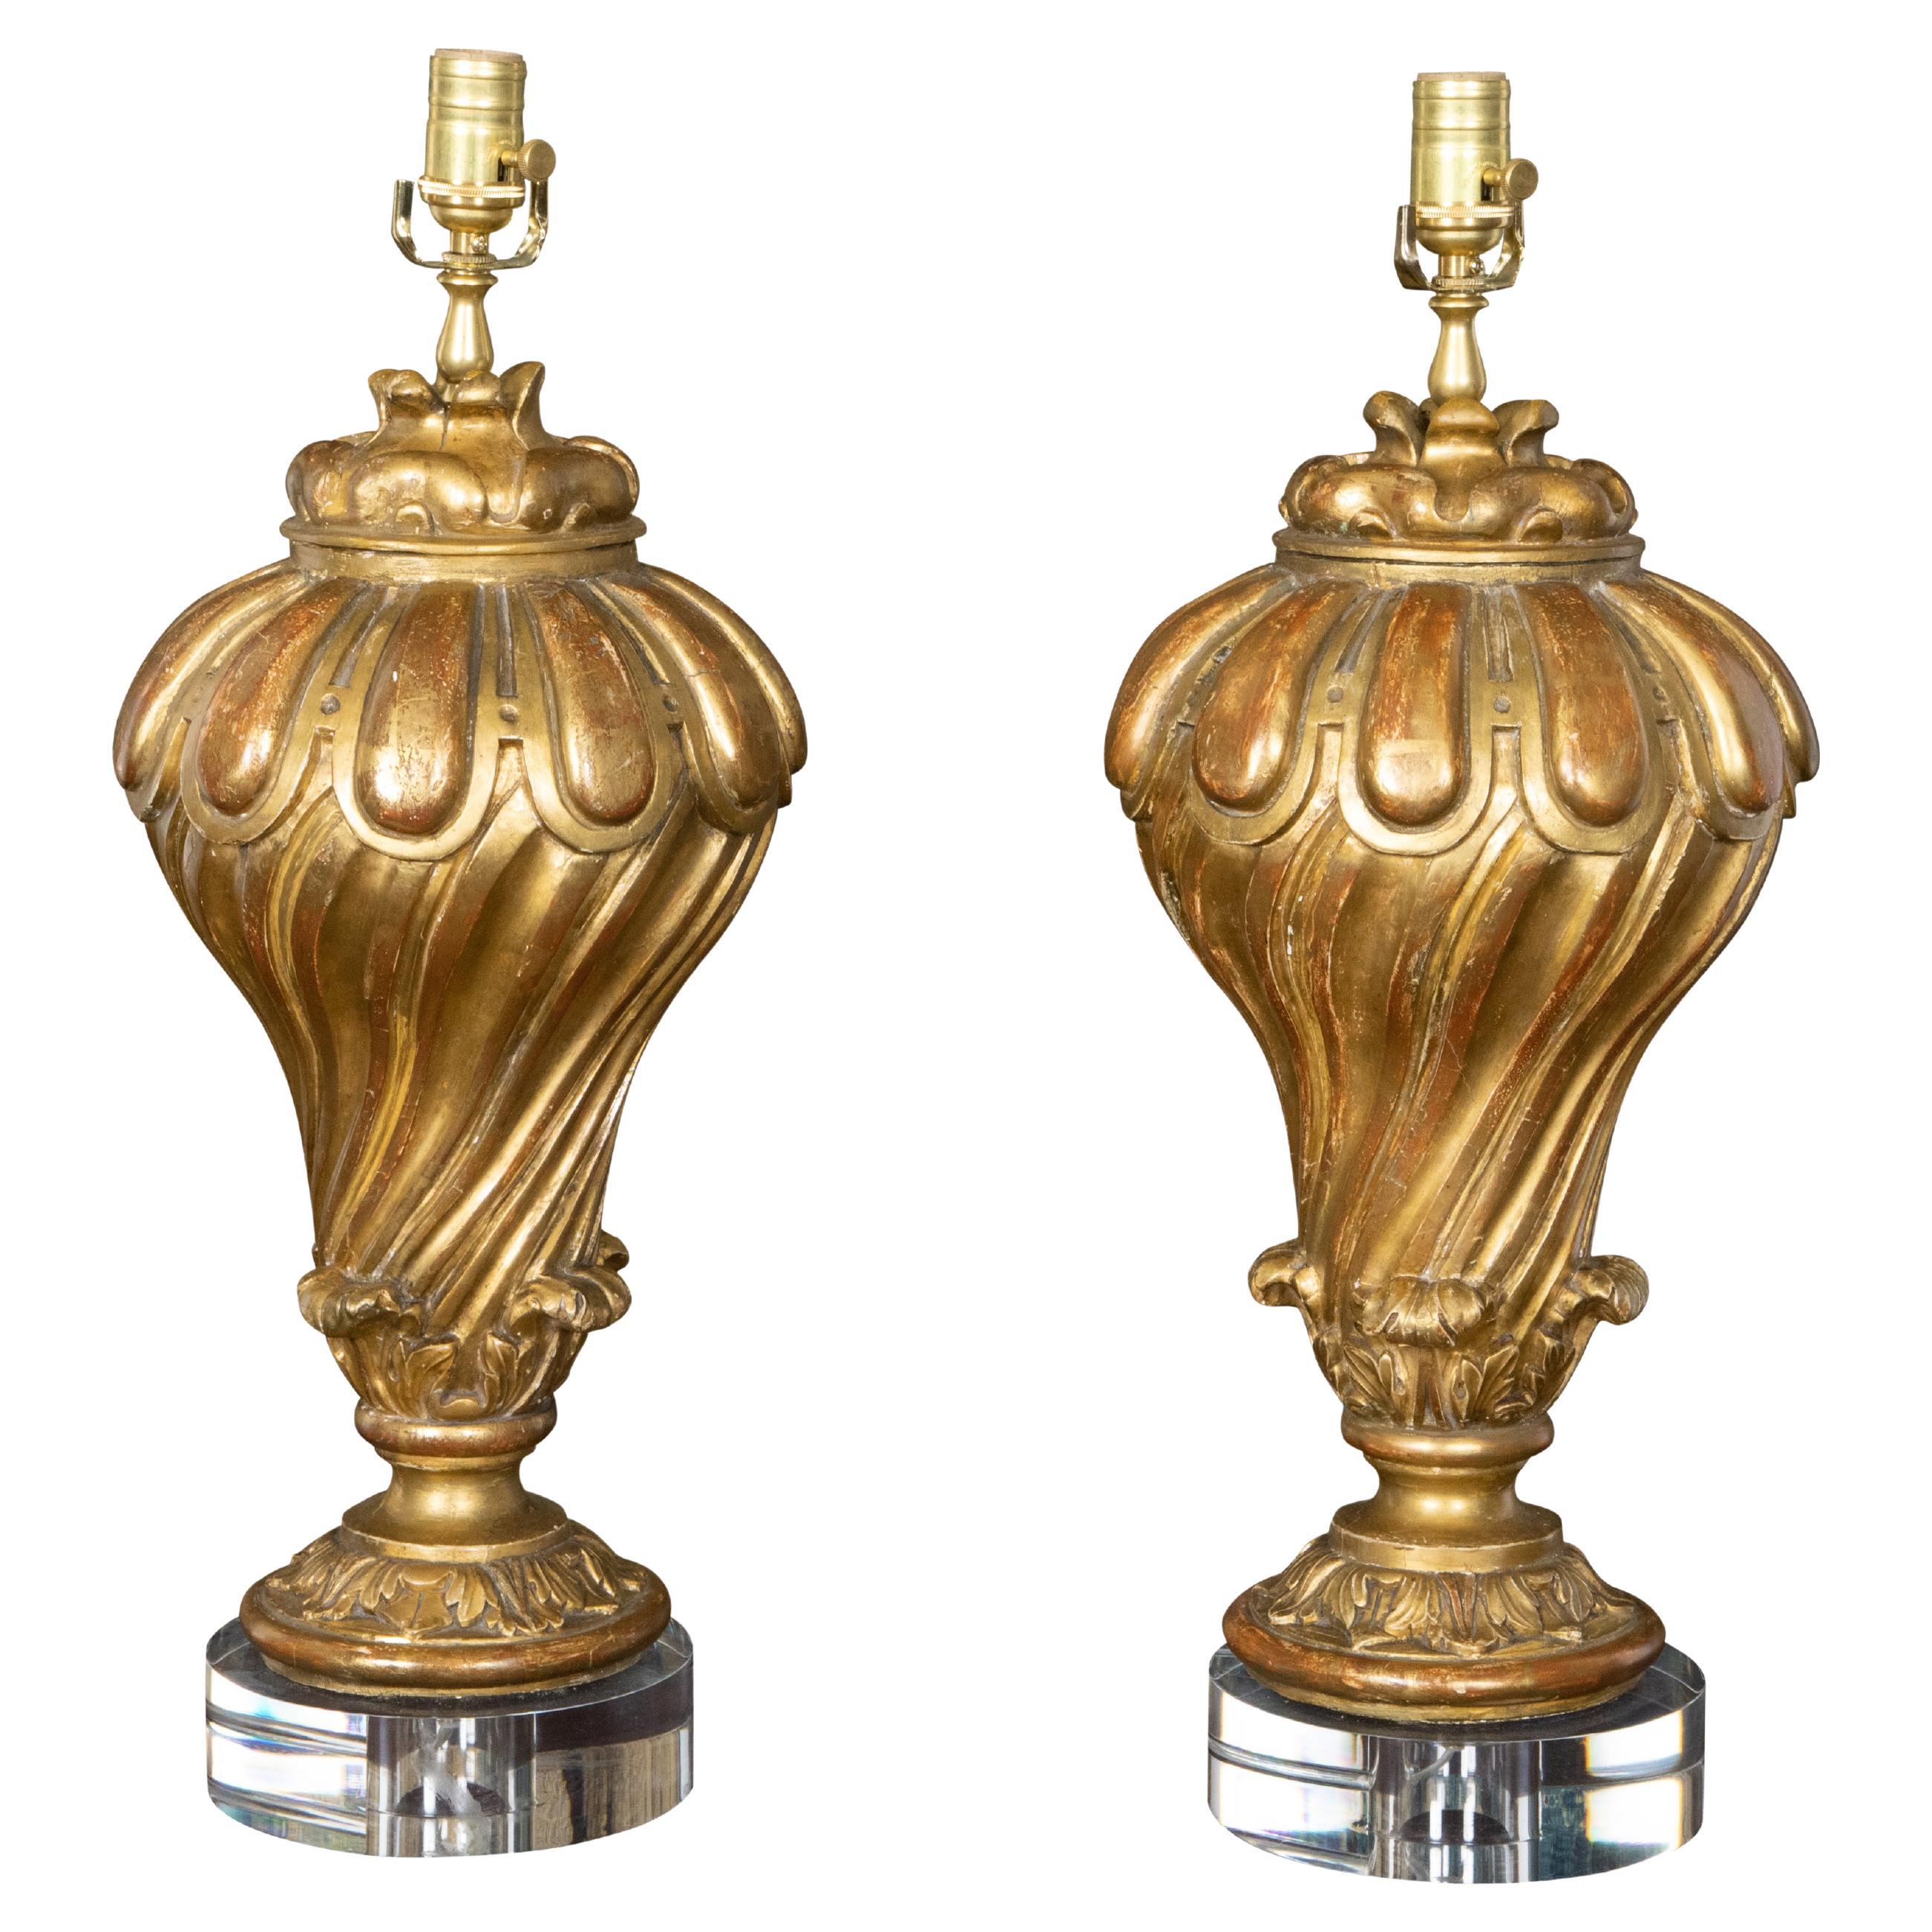 Paire de fragments de bois doré sculptés italiens du 19ème siècle transformés en lampes sur lucite